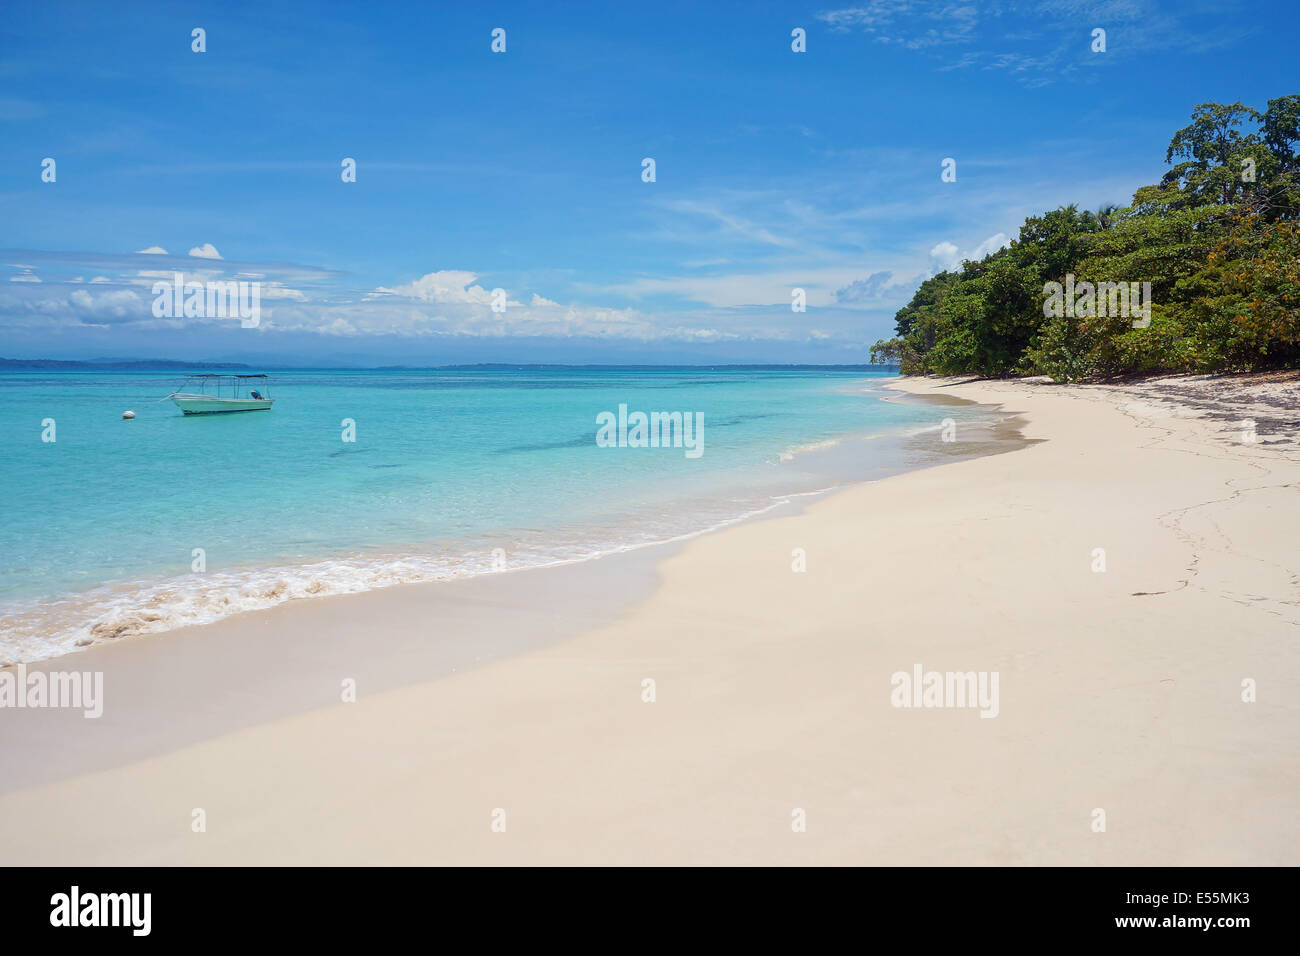 tropischen weißen Sandstrand mit türkisfarbenem Wasser und ein Boot am Liegeplatz Boje, Karibik, Zapatilla Inseln, Panama Stockfoto